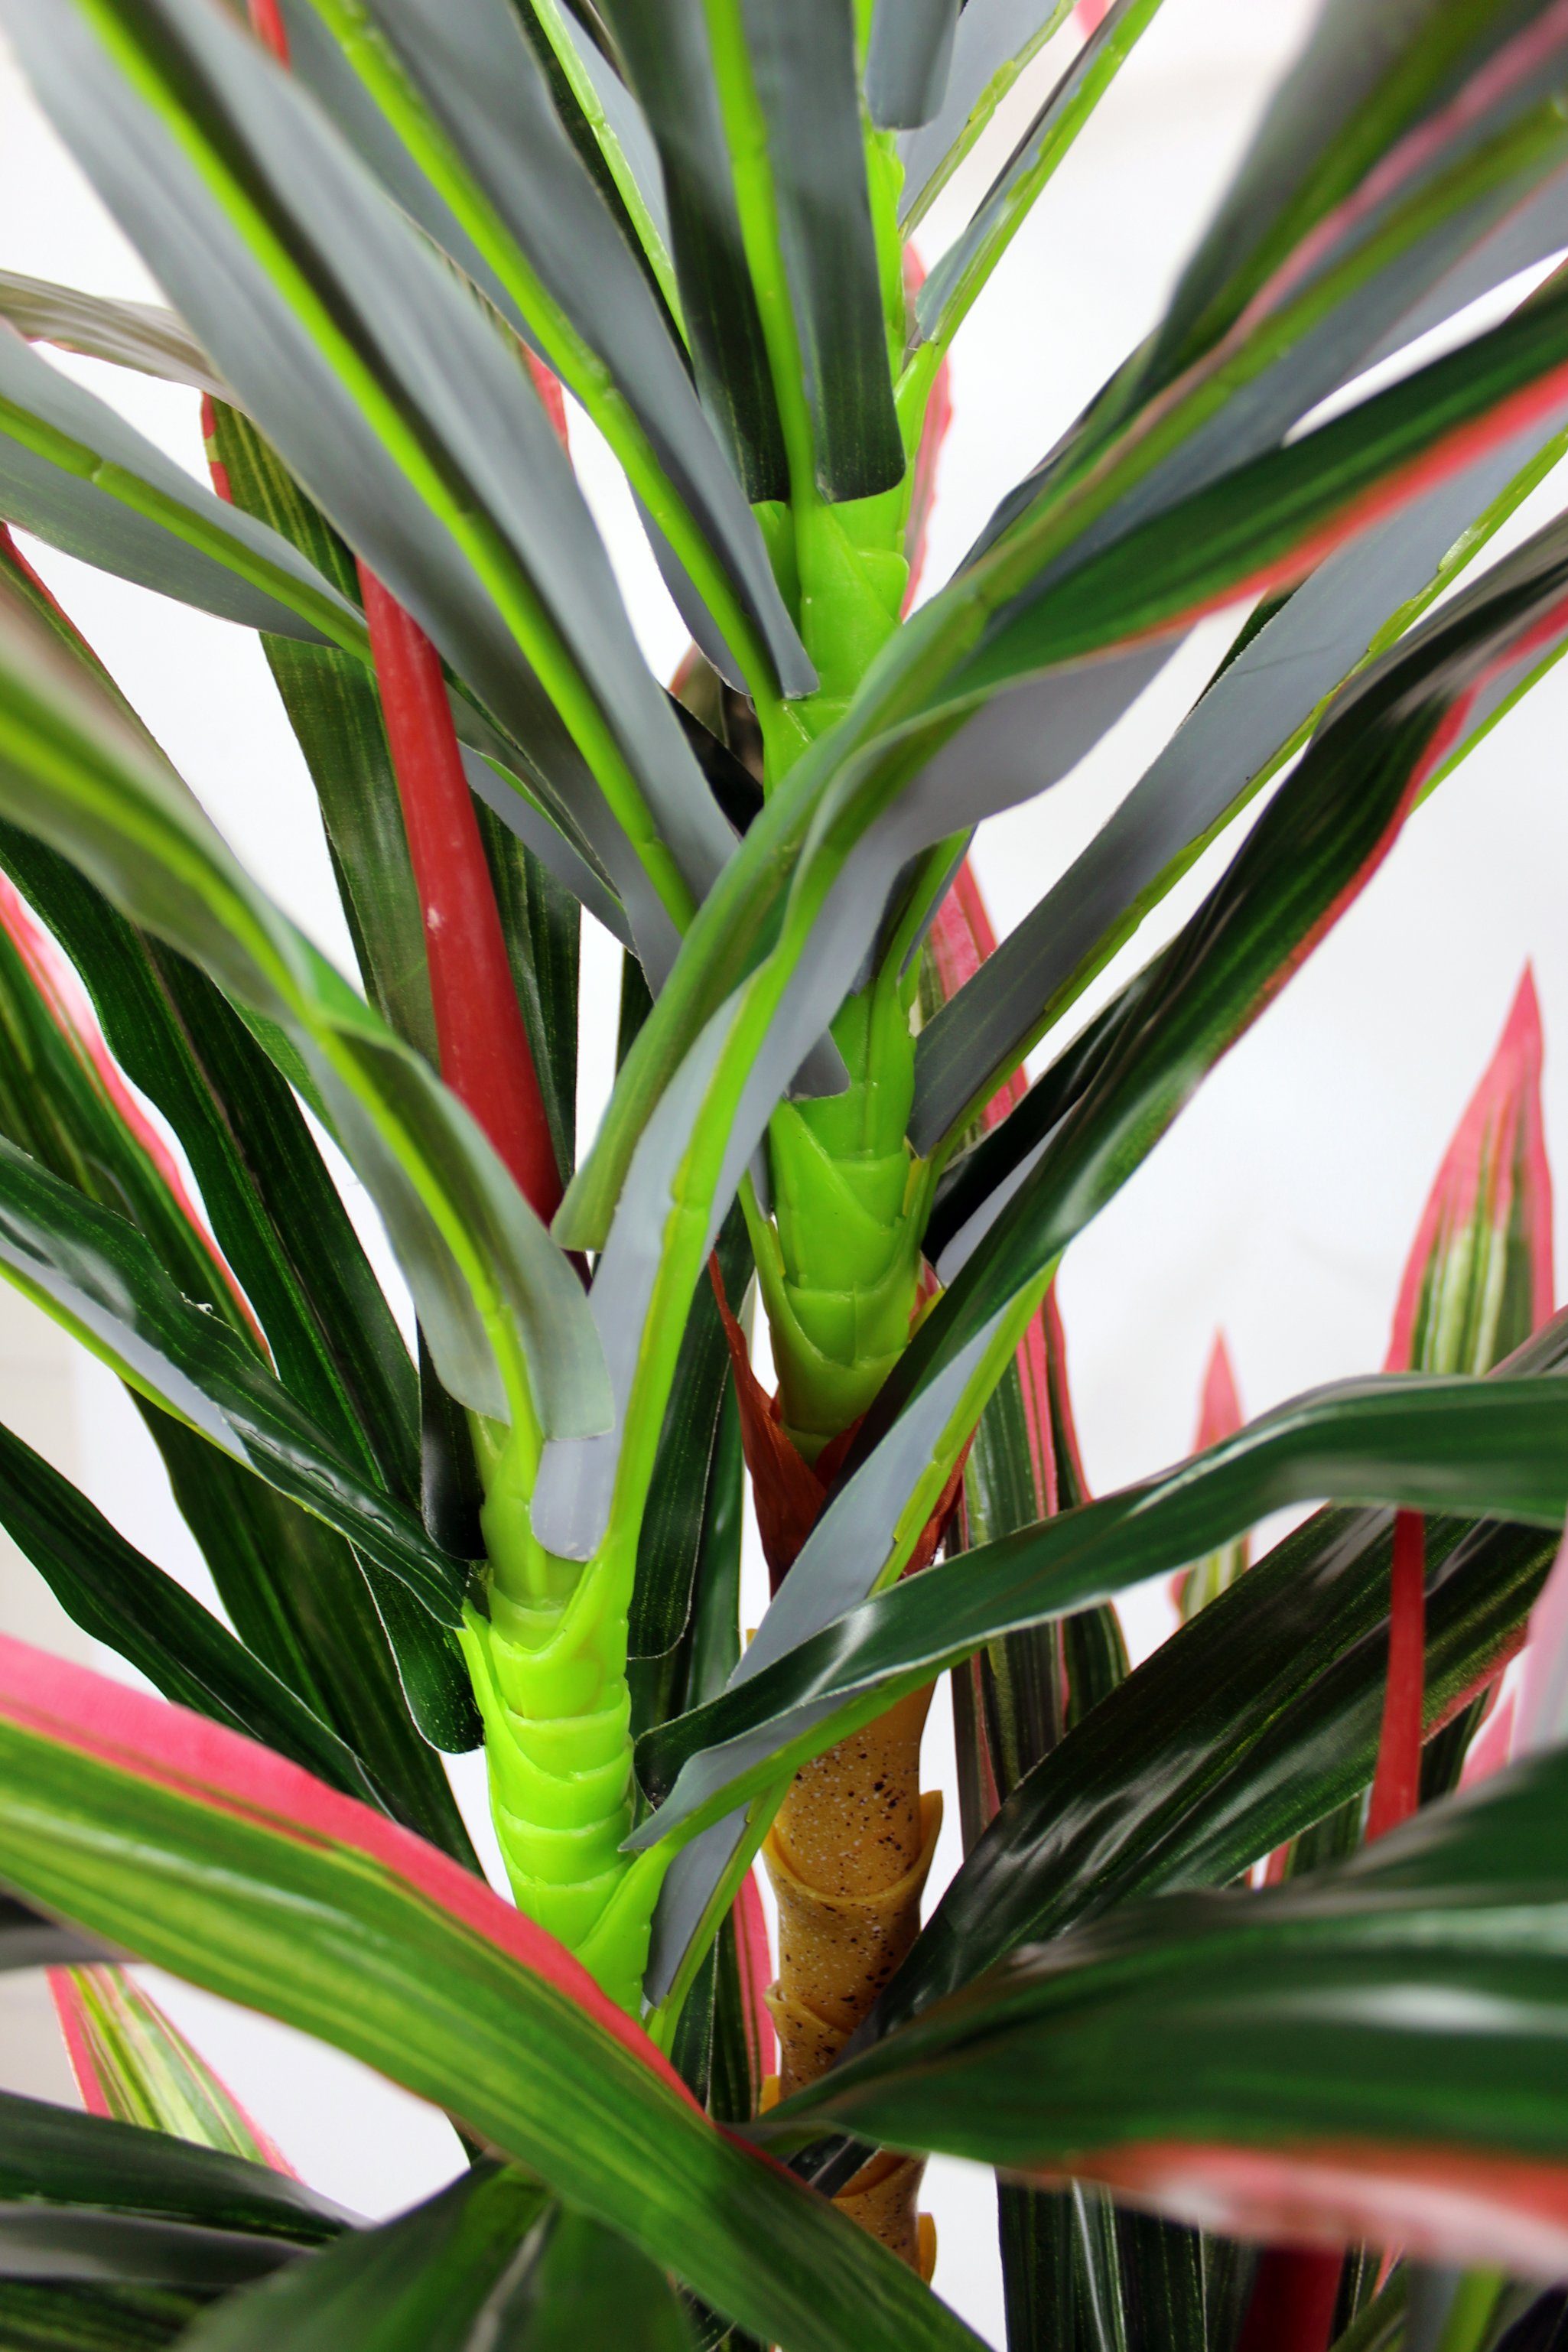 Kunstpflanze künstliche Dracaena Kunstpflanze im Palme Höhe fertig zum Arnusa, Pflanze tropische 180 cm, Topf Aufstellen Dracaena